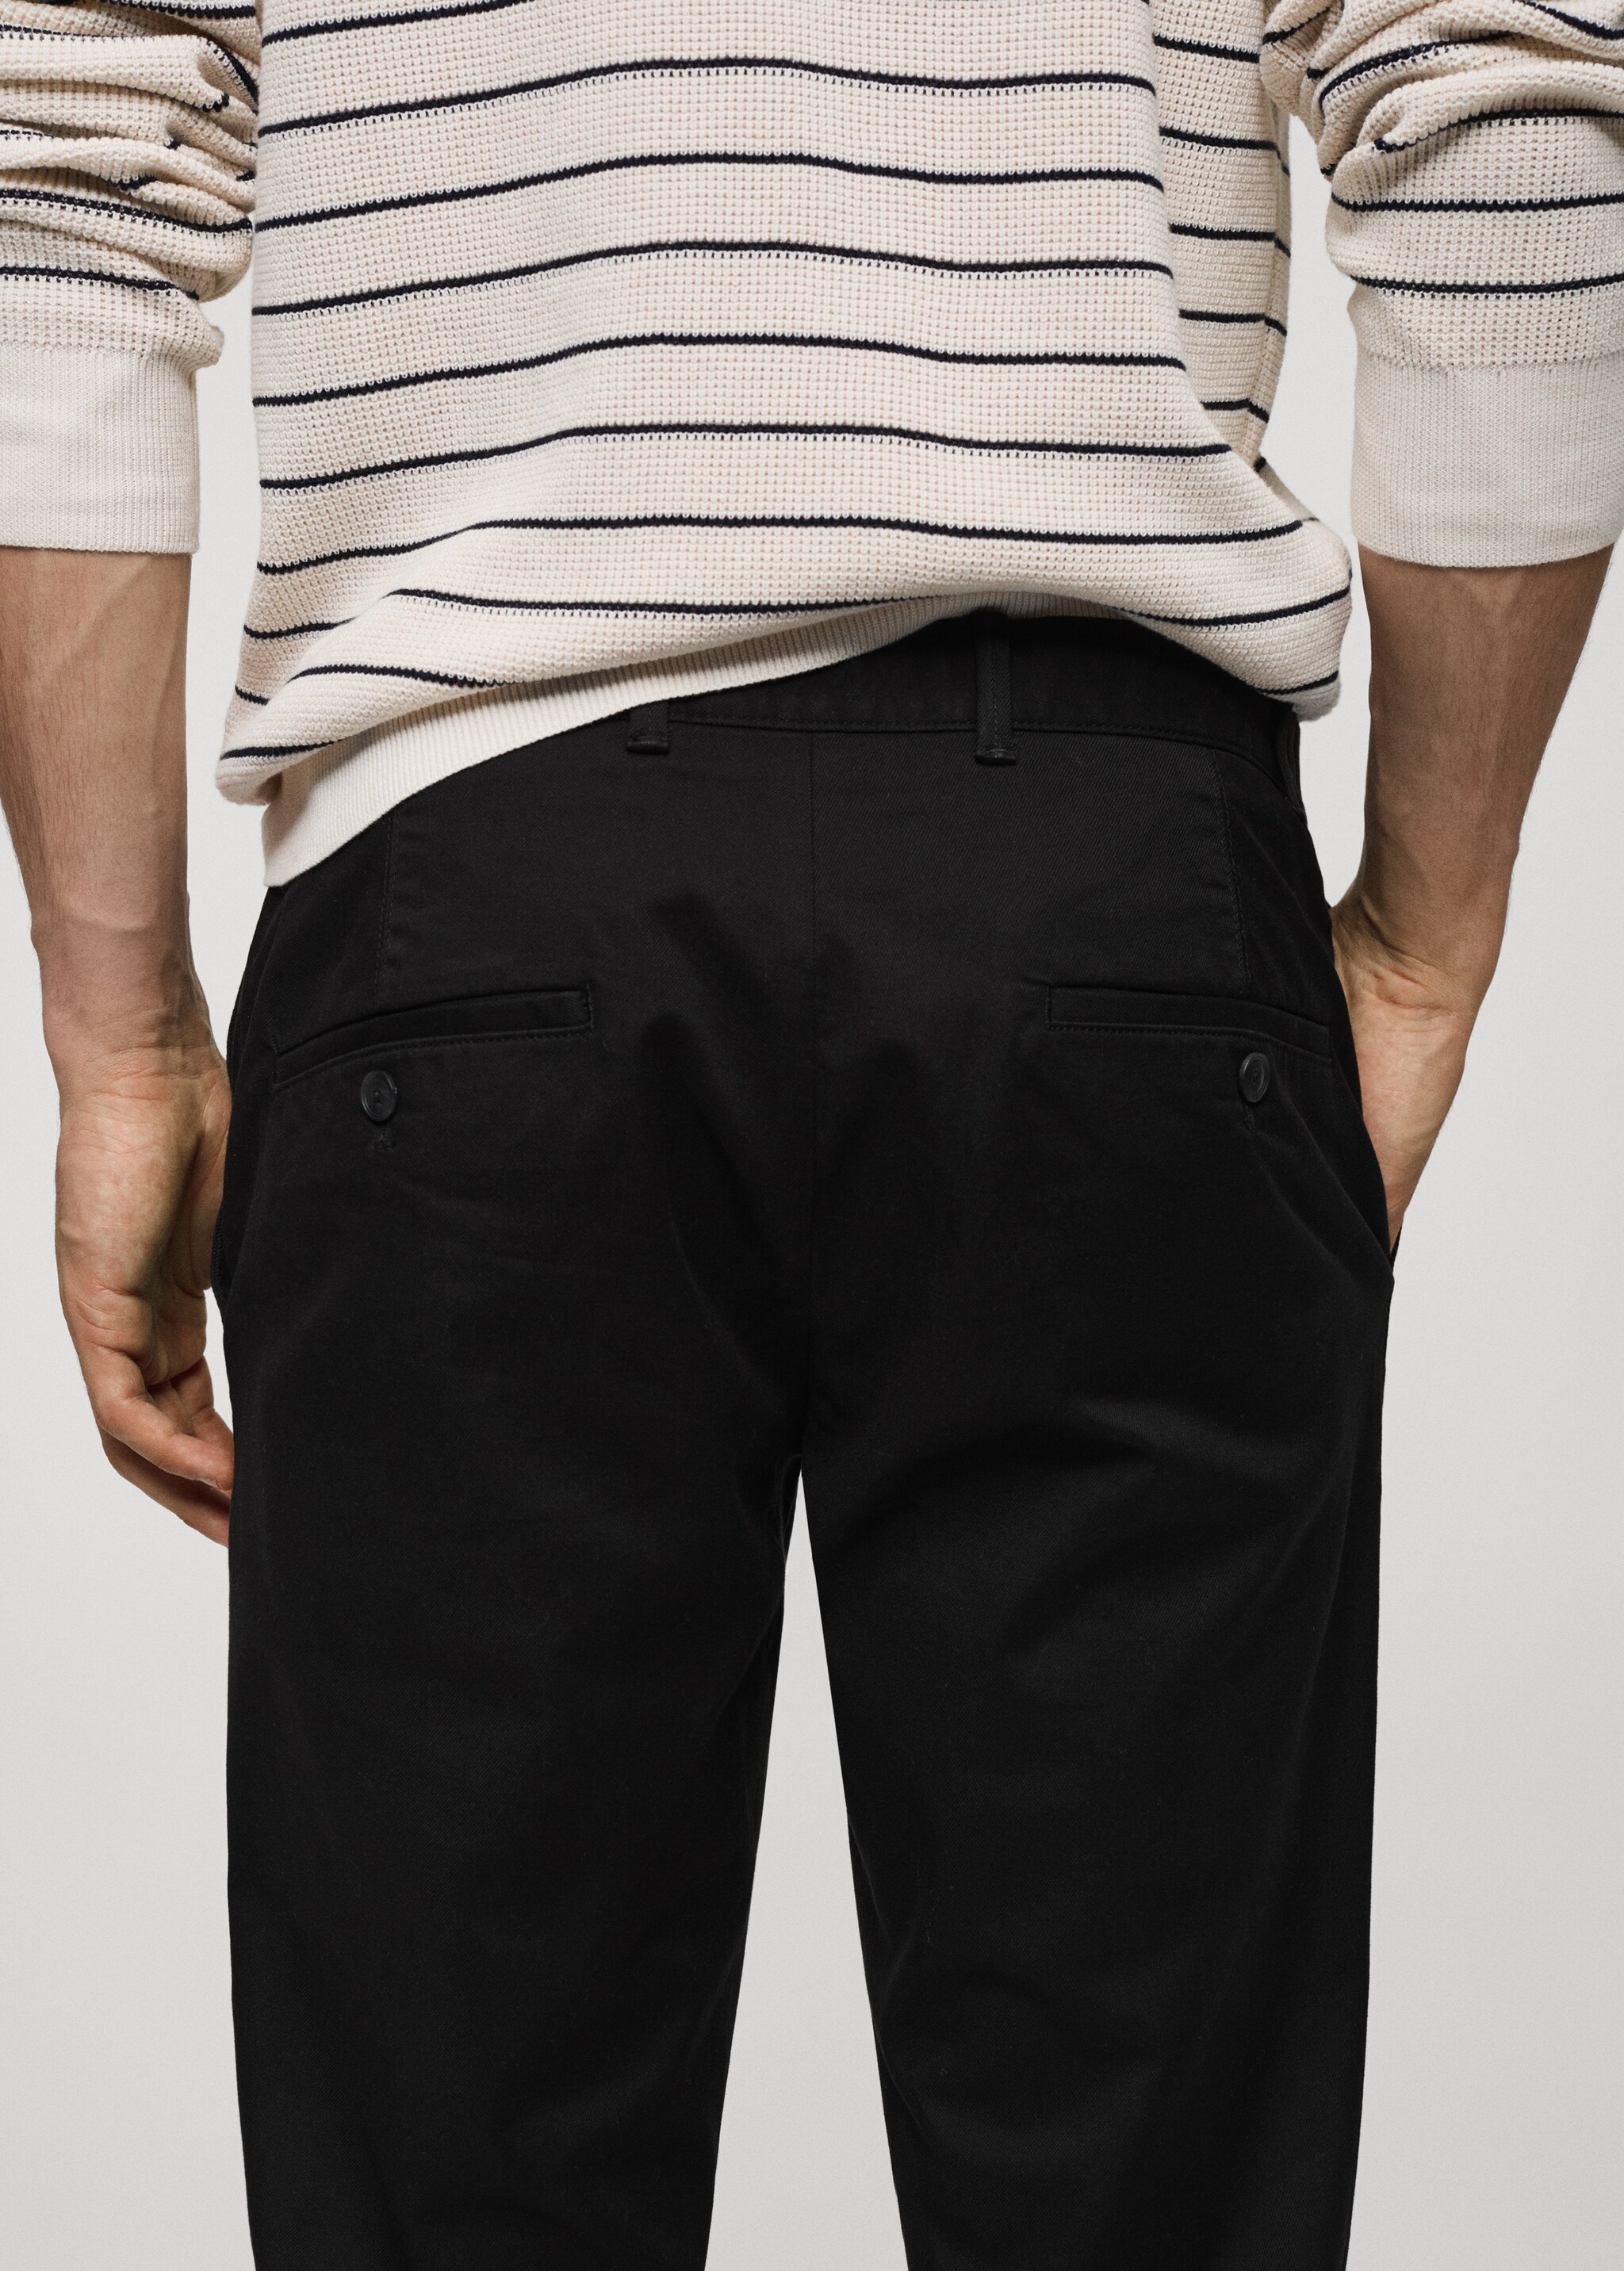 Spodnie chinos slim fit z diagonalu - Szczegóły artykułu 4